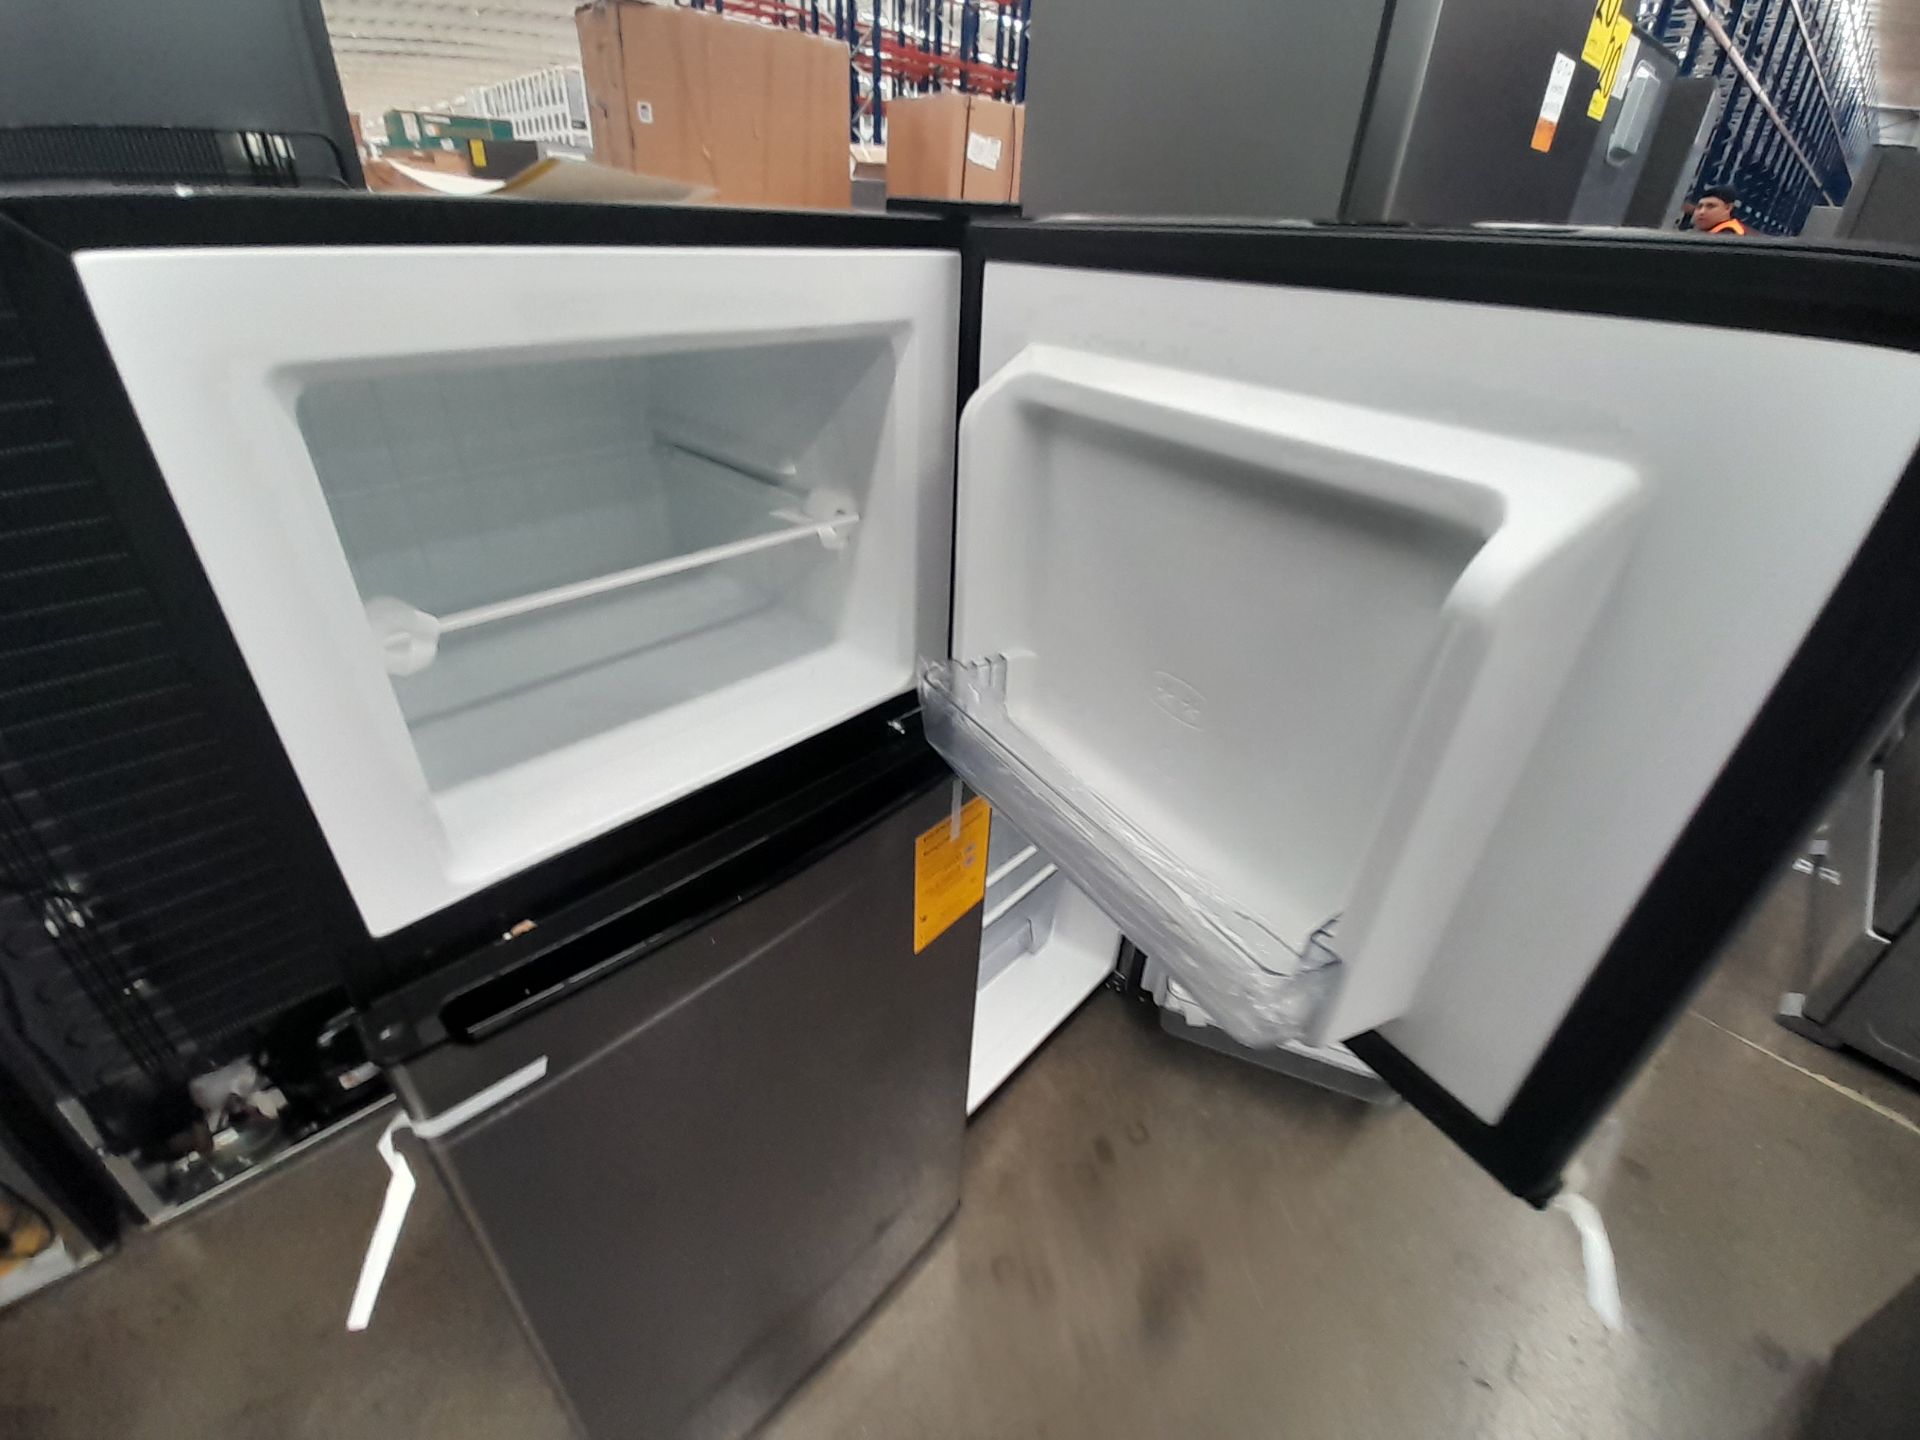 Lote de 2 refrigeradores contiene: 1 refrigerador Marca GALANZ, Modelo GLR55TS1, Serie ND, Colo - Image 6 of 8